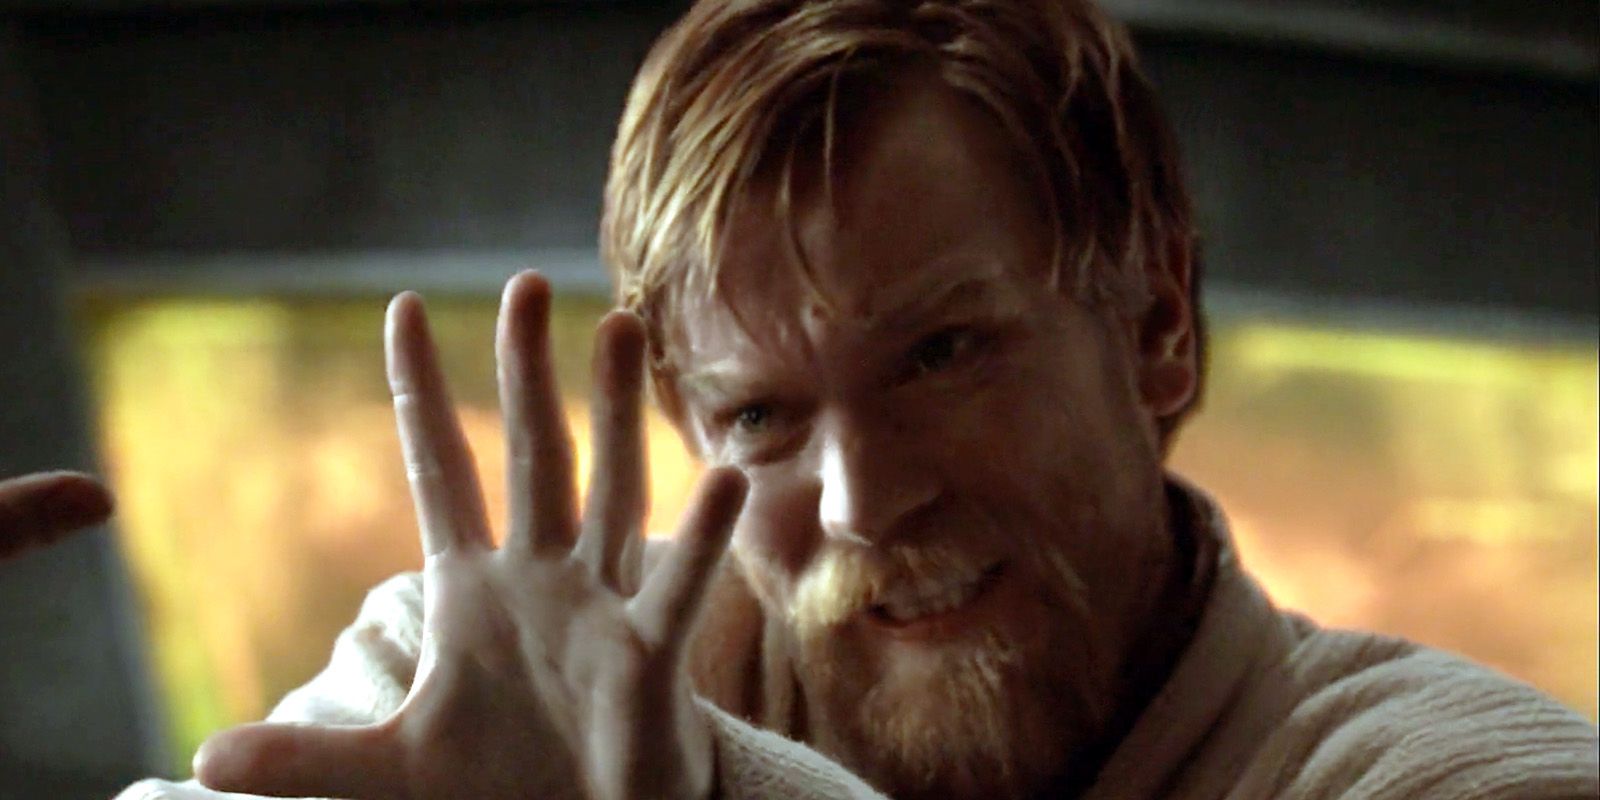 La estrella de Obi-Wan Kenobi, Ewan McGregor, dice que usa la fuerza en la vida real